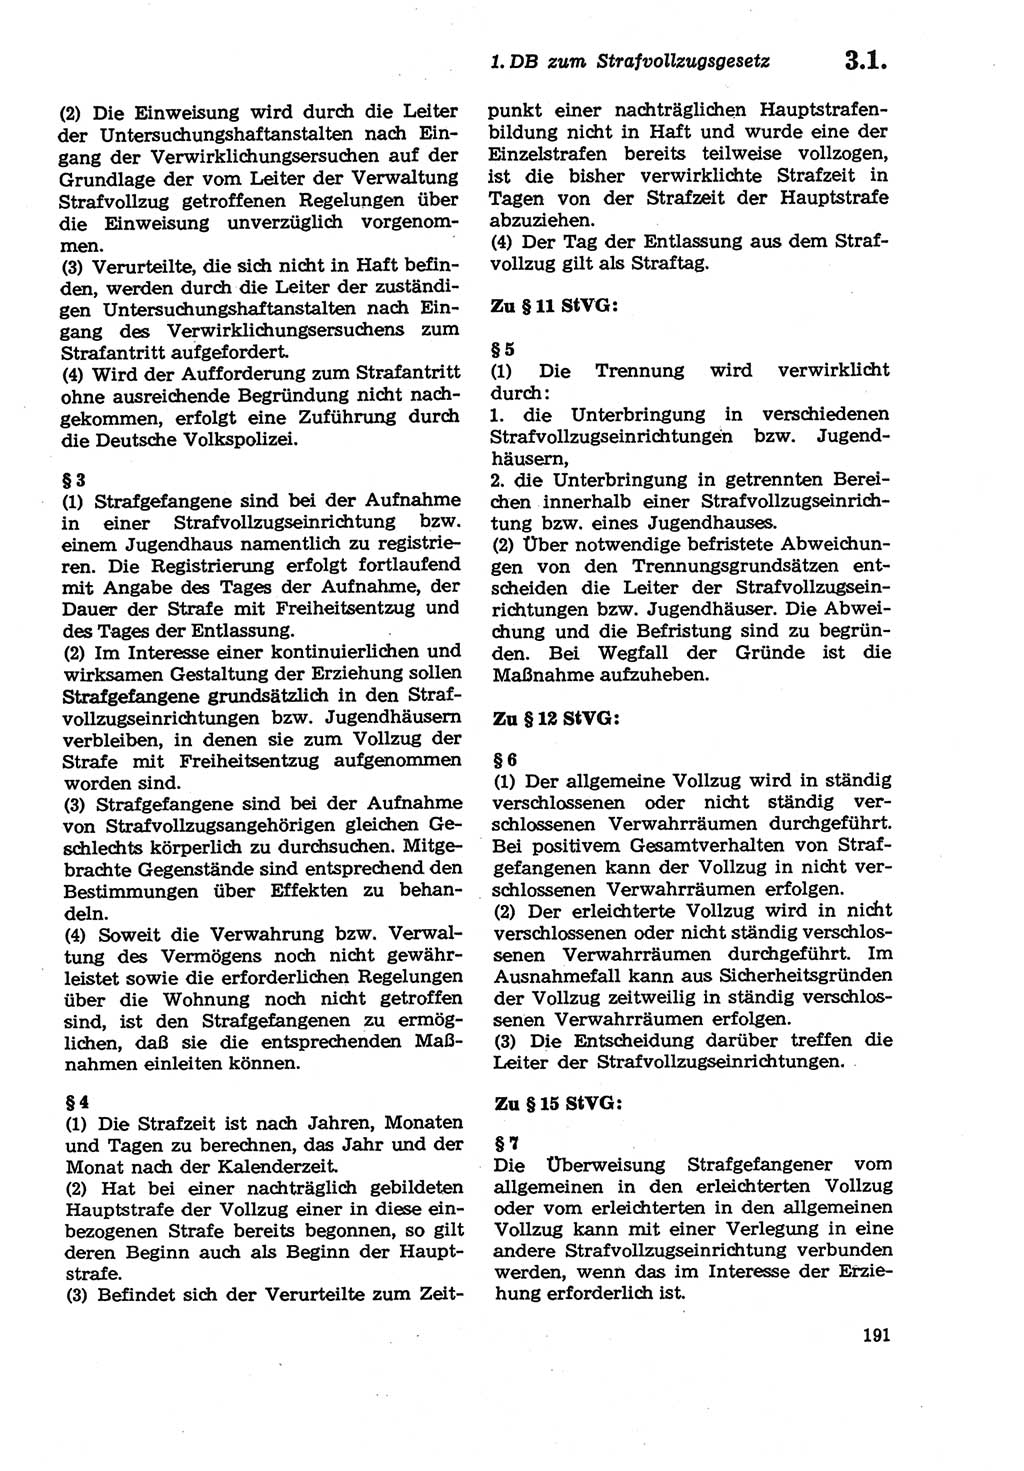 Strafprozeßordnung (StPO) der Deutschen Demokratischen Republik (DDR) sowie angrenzende Gesetze und Bestimmungen 1979, Seite 191 (StPO DDR Ges. Best. 1979, S. 191)